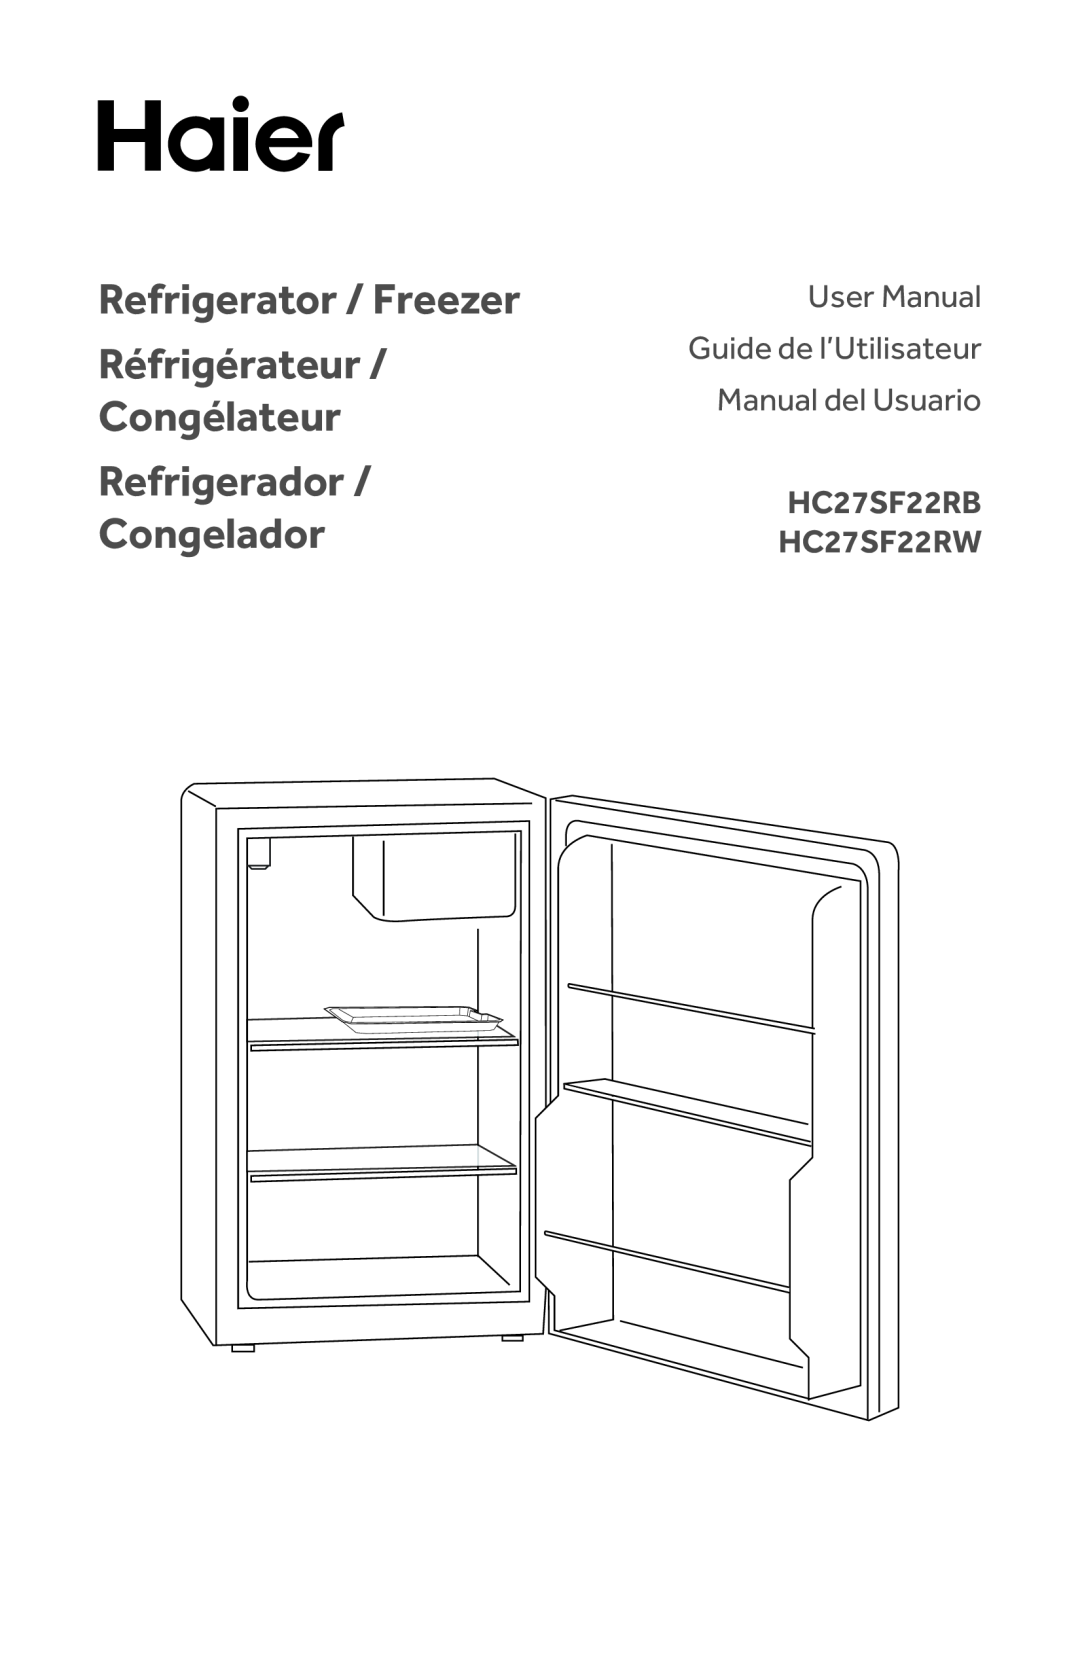 Haier HC27SF22RB user manual Refrigerator / Freezer Réfrigérateur Congélateur, Refrigerador Congelador 